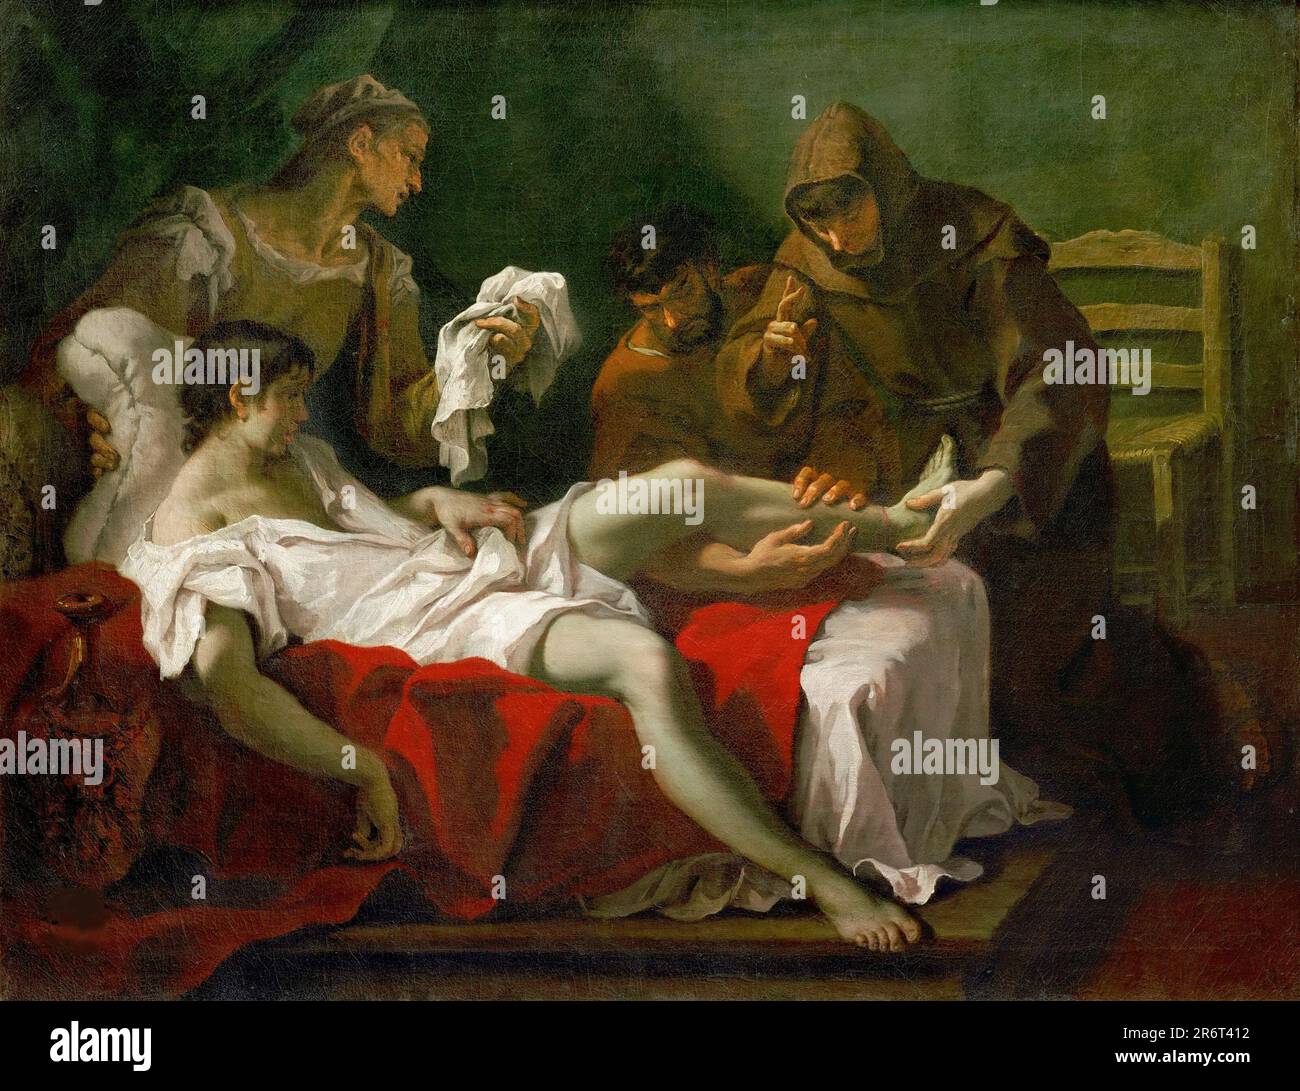 Heiliger Antonius von Padua heilt eine Jugend. Museum: Musée du Louvre, Paris. Autor: SEBASTIANO RICCI. Stockfoto